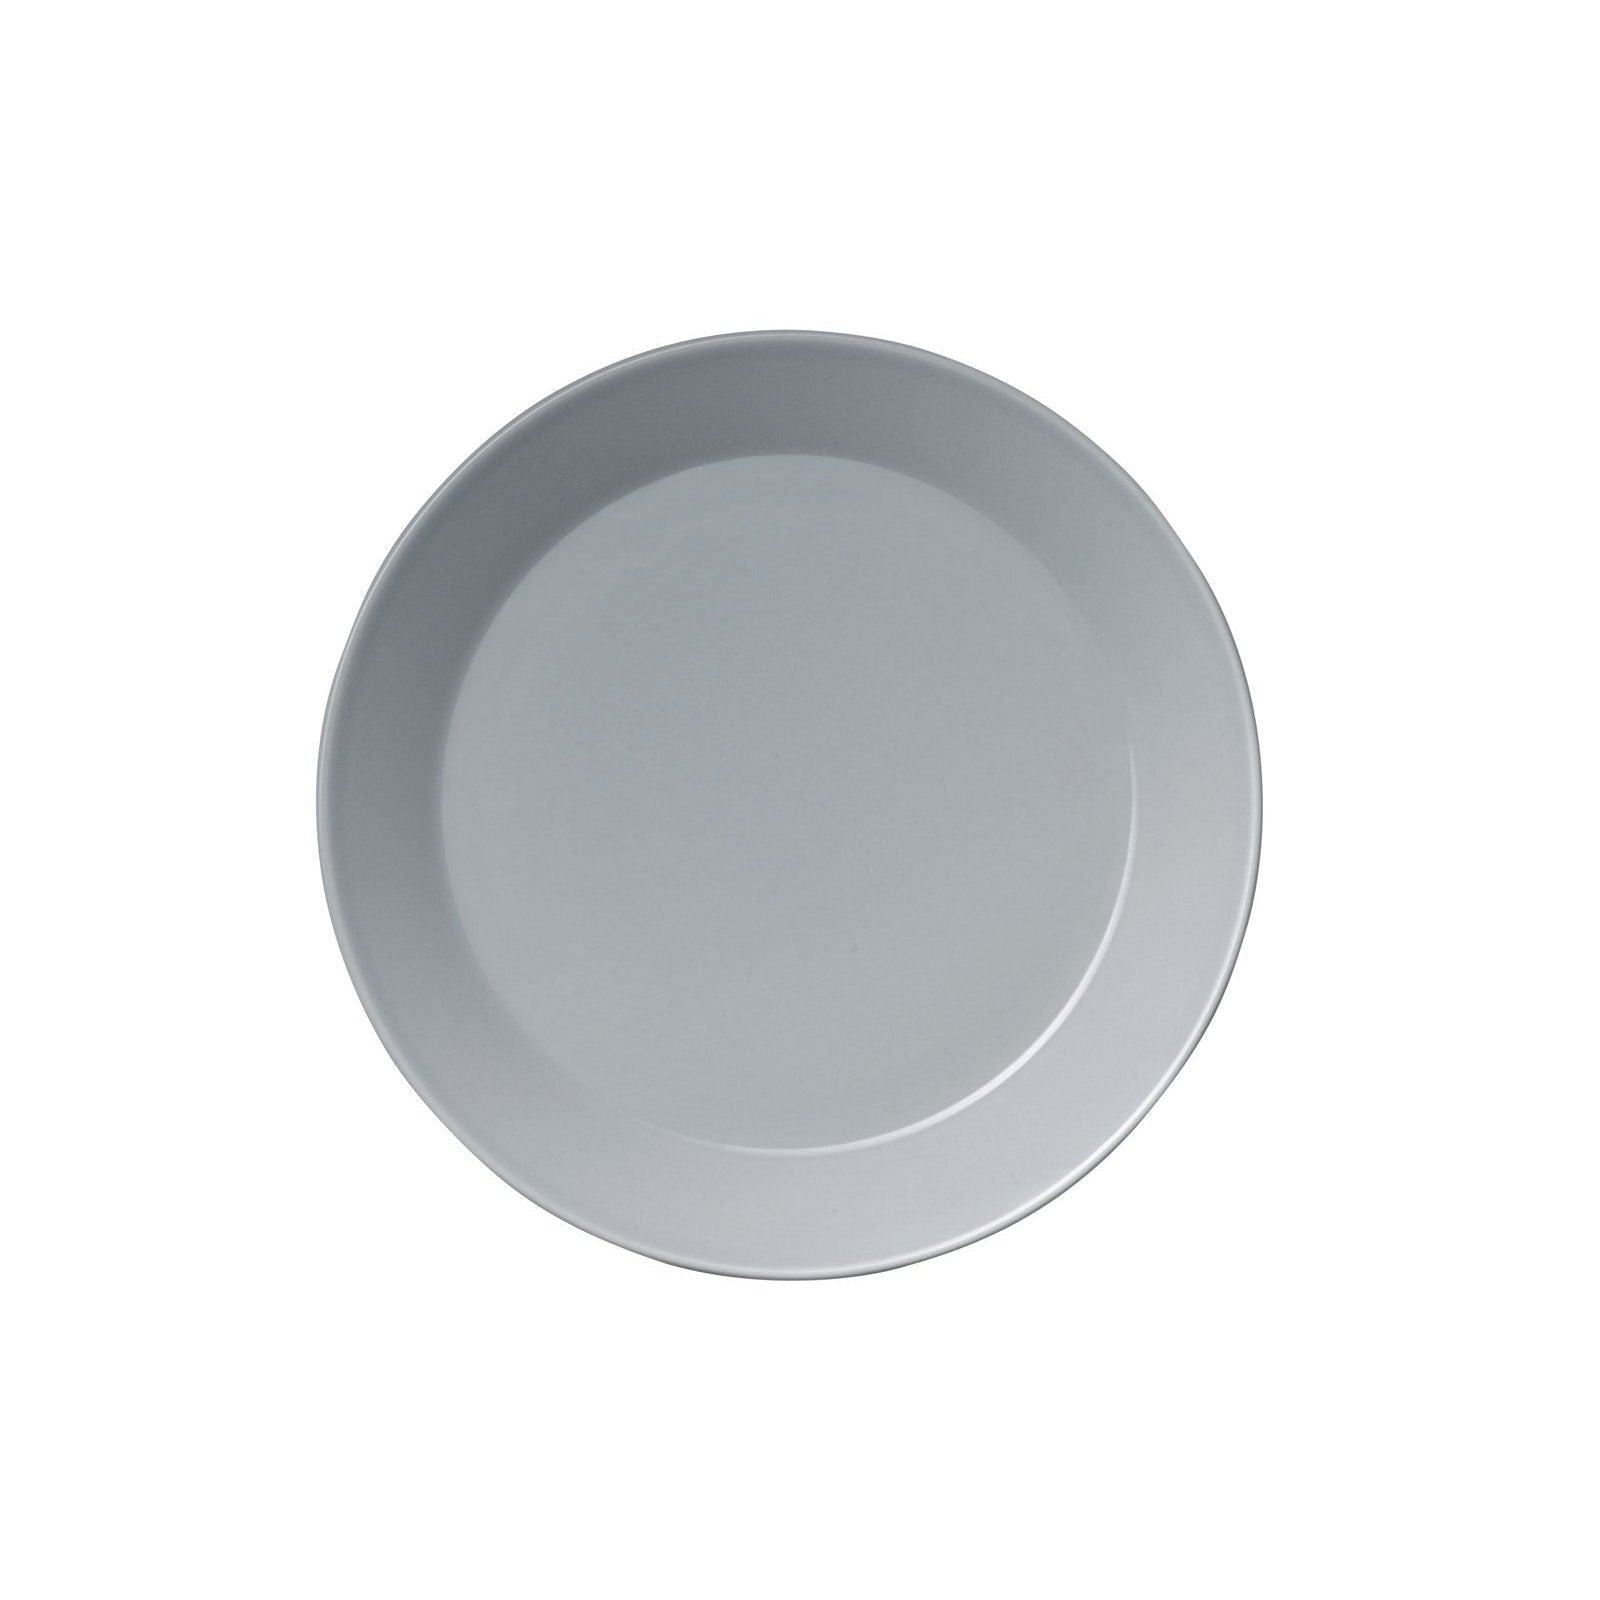 Iittala Teema Plate Pearl Grey, 26 cm